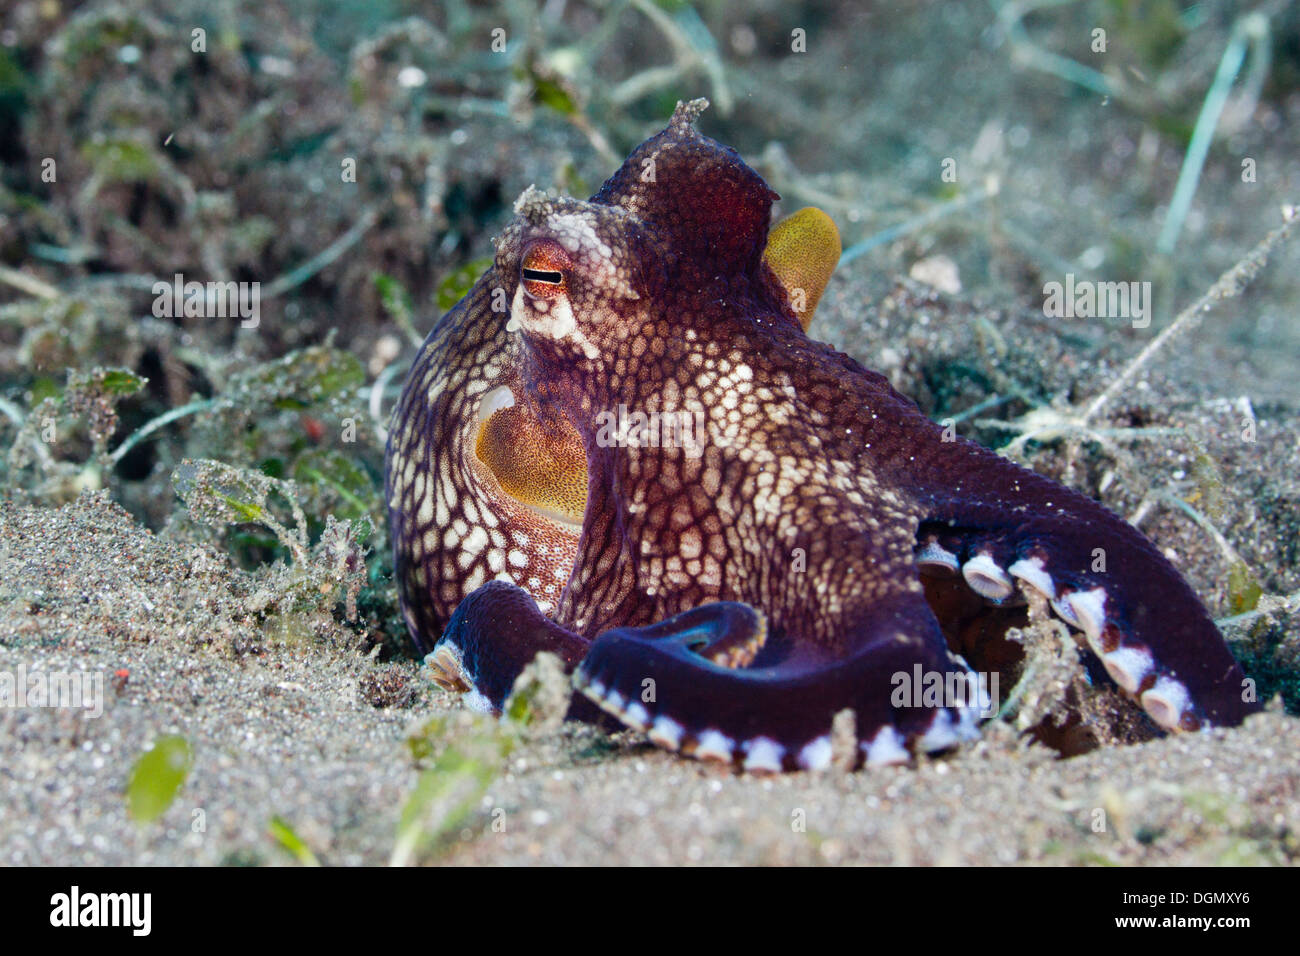 Coconut octopus - Amphioctopus marginatus, Lembeh Strait, Indonesia Stock Photo